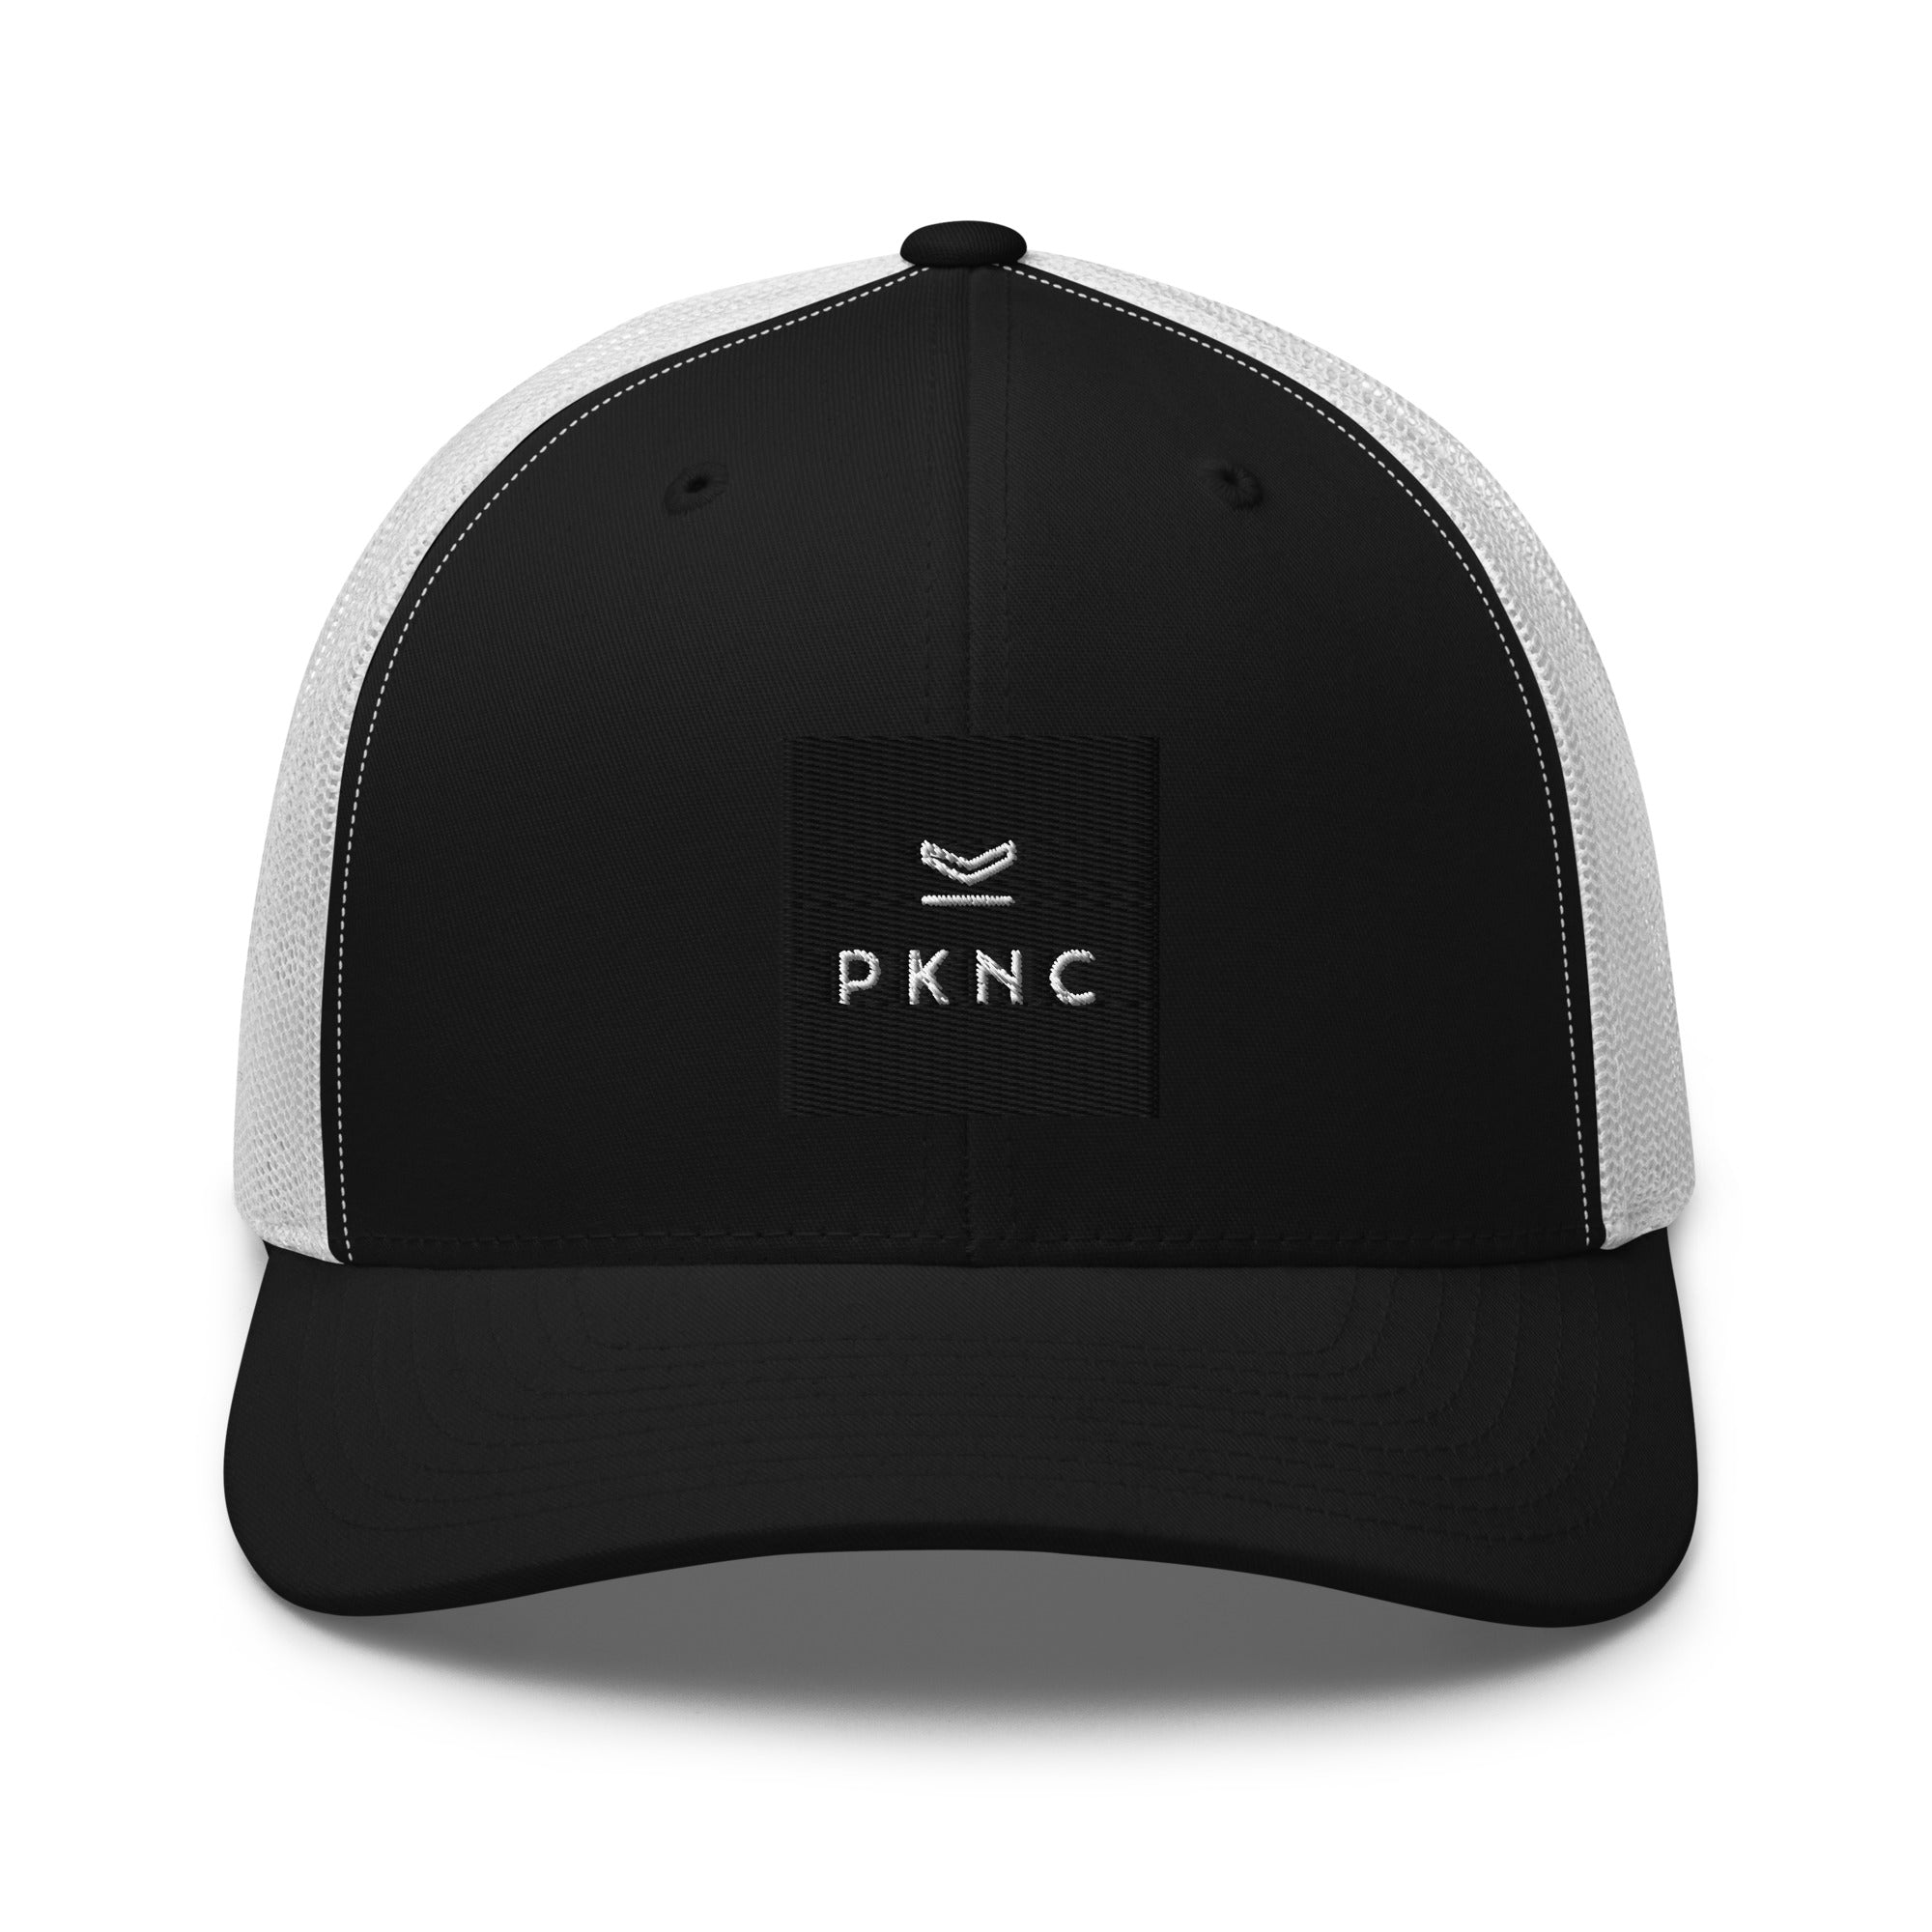 casquette noire et blanche PKNC